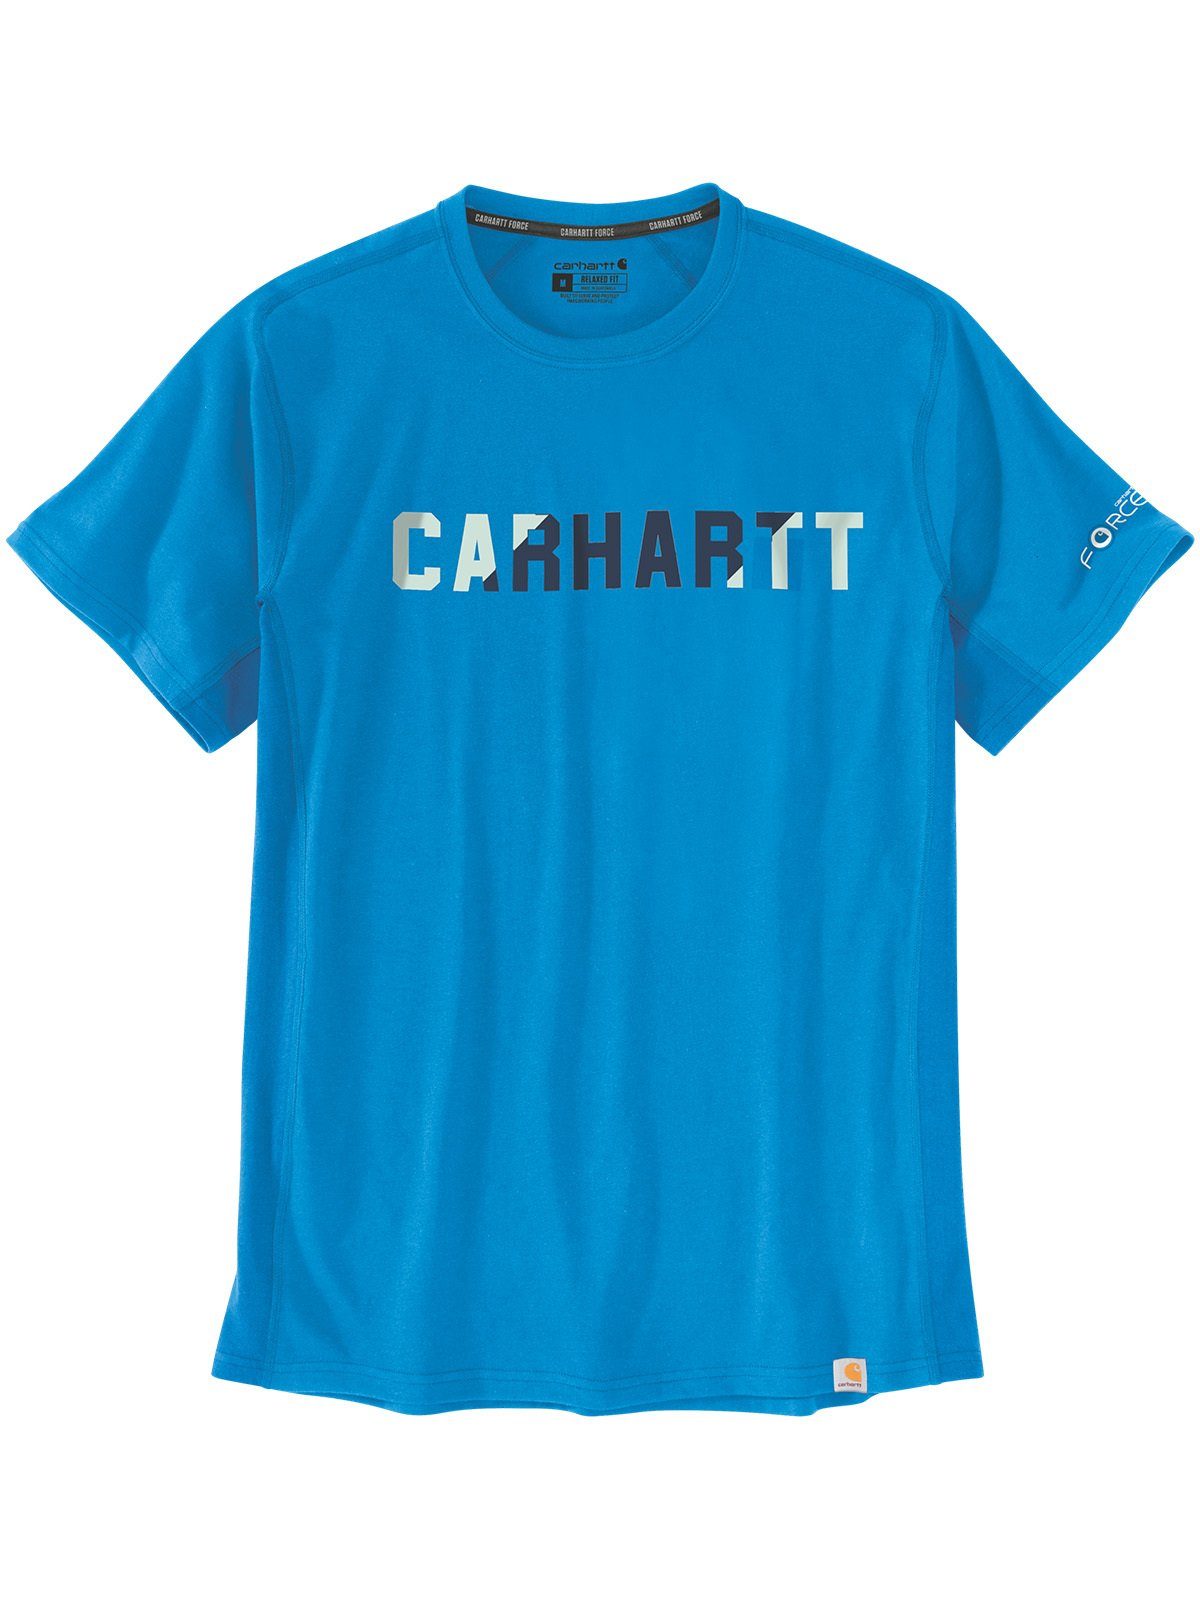 T-Shirt T-Shirt hellblau Carhartt Logo azure blue Carhartt